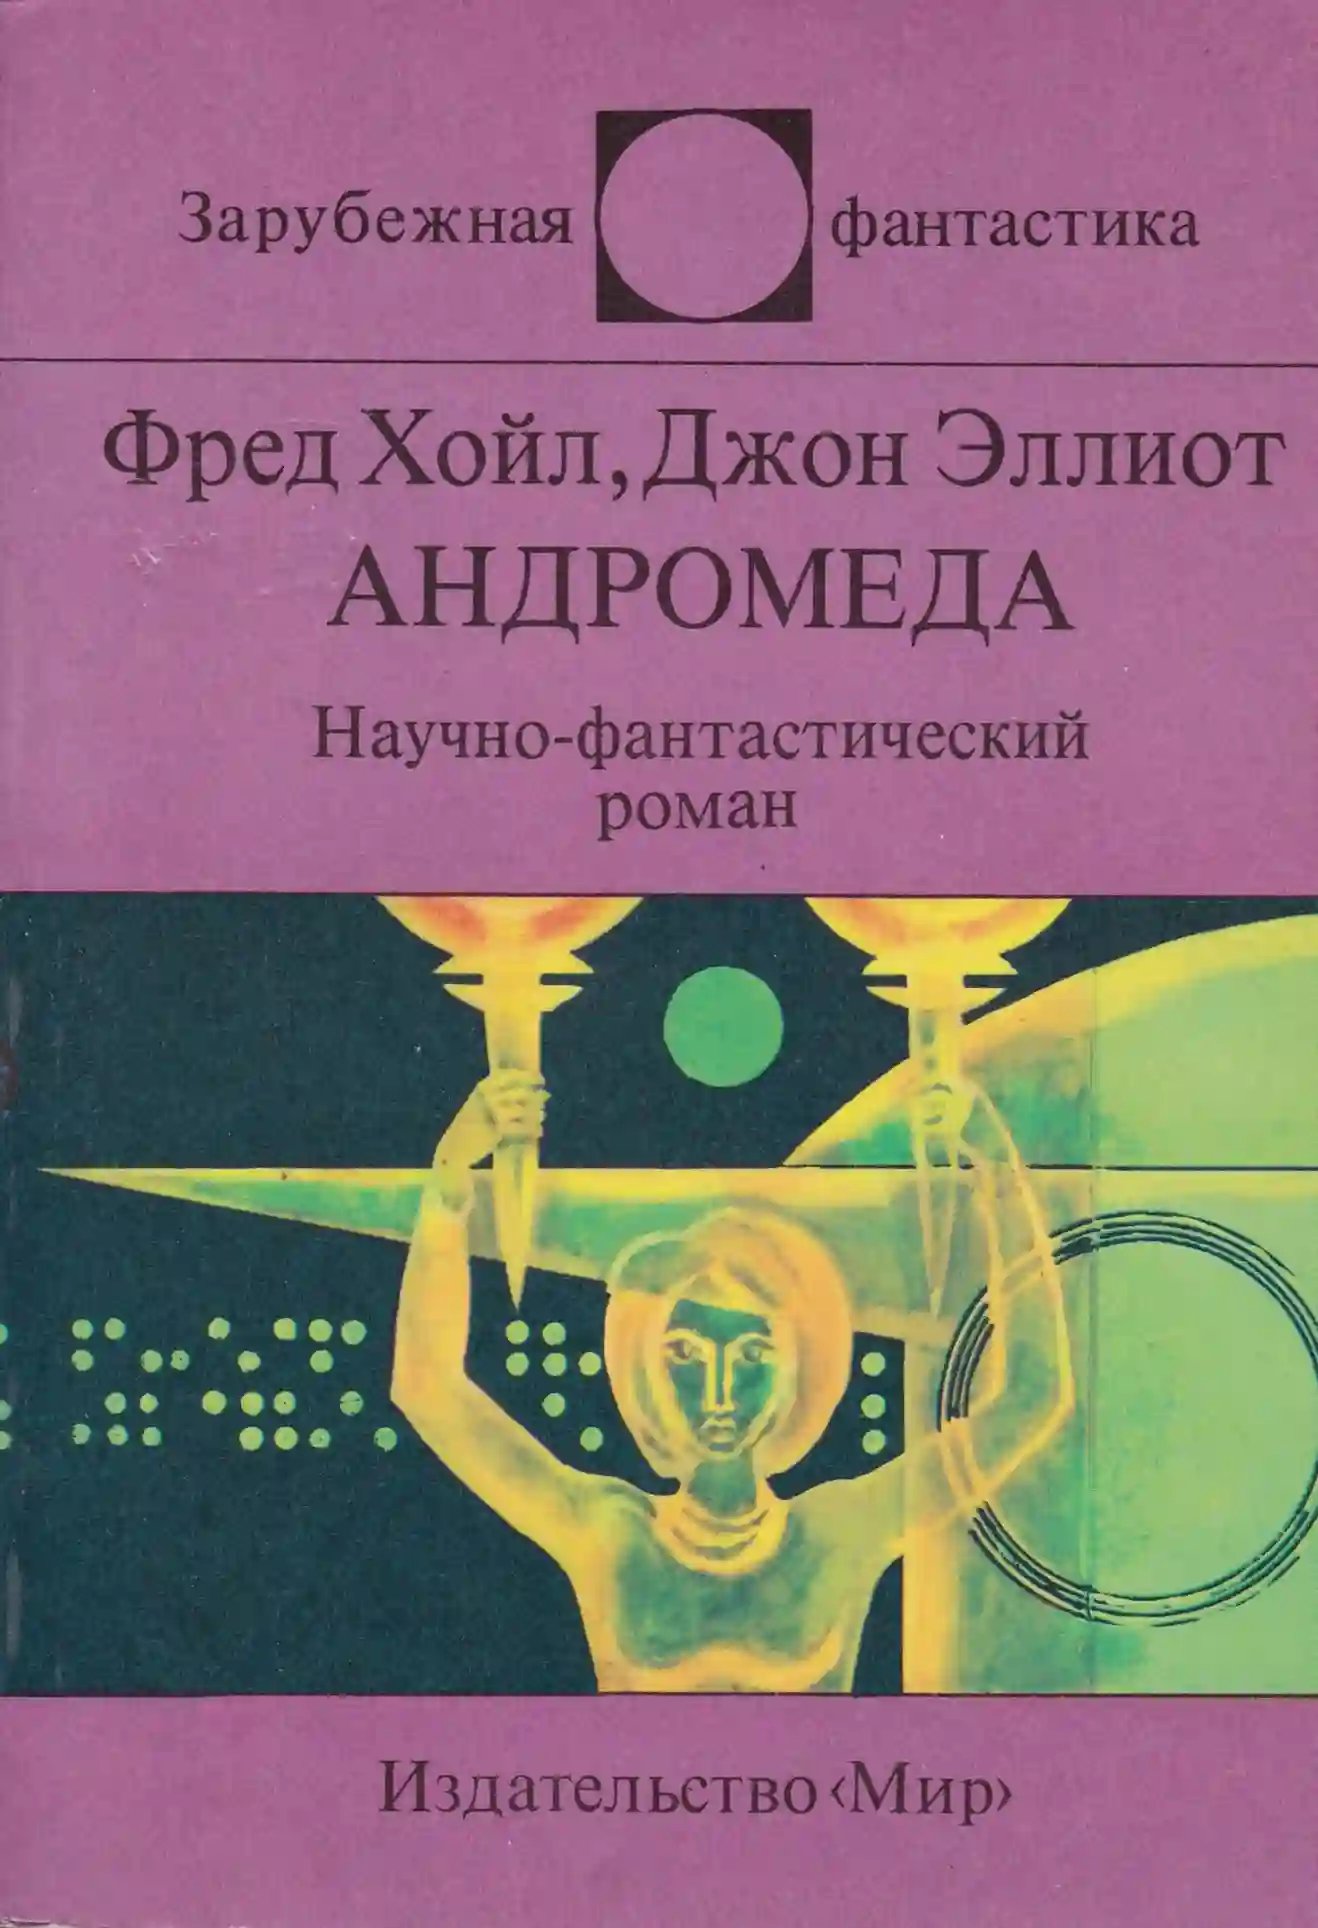 Андромеда - обложка книги